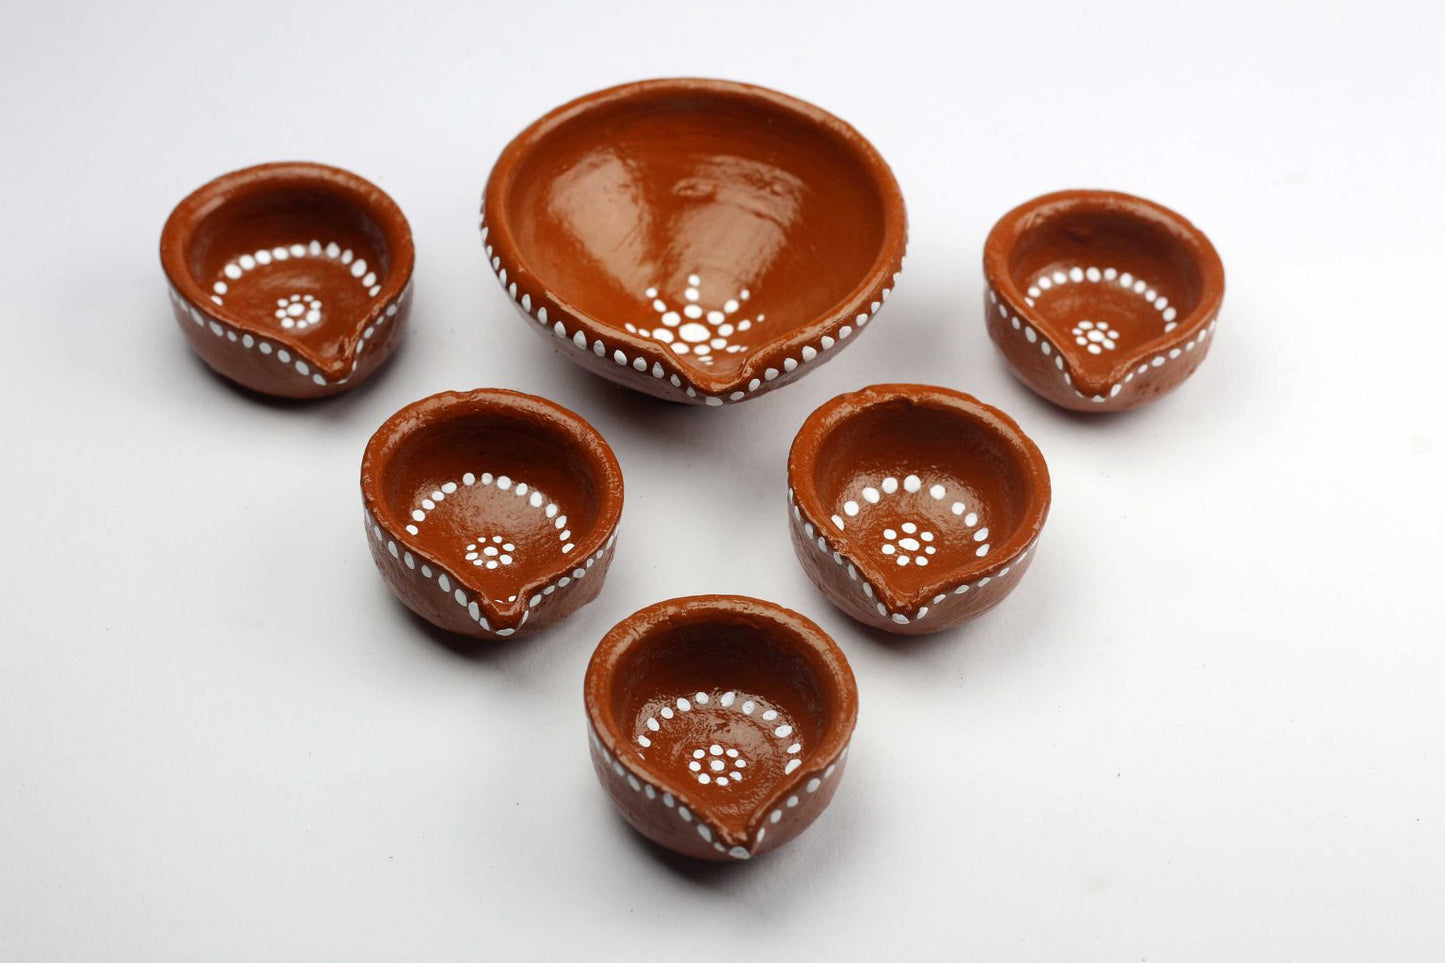 Neev hand painted earthenware diyas for Decor,Diwali and Lighting(Pack of 5 small and 1 big diya)